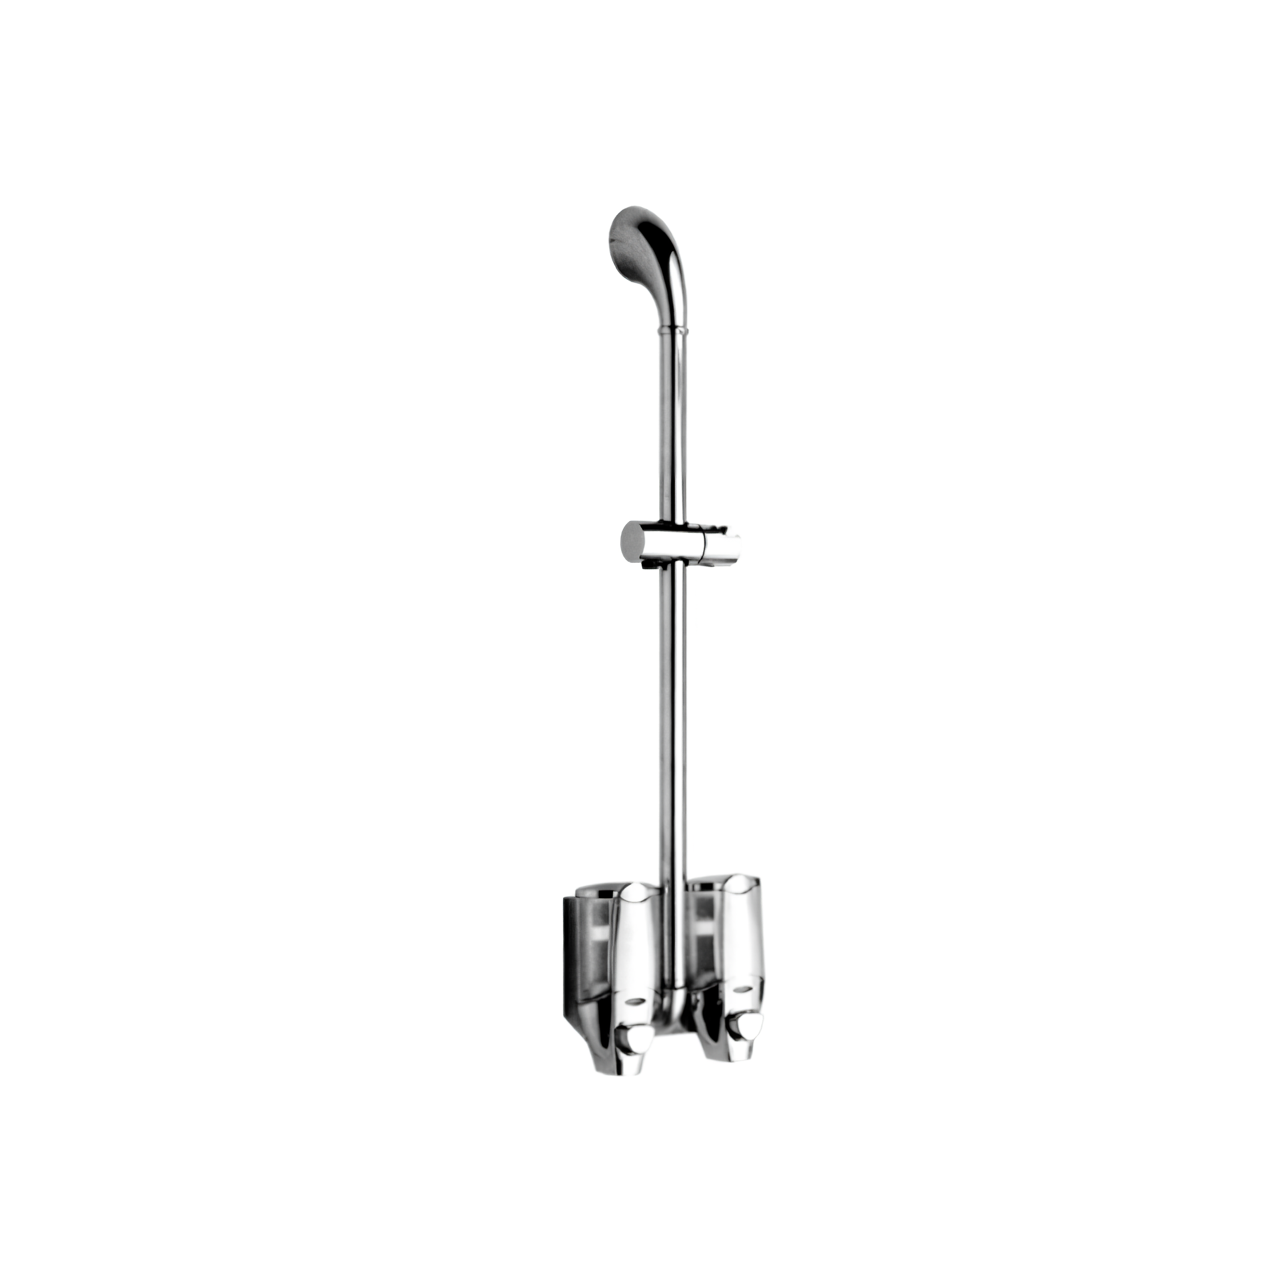 H137C Wall Mount Bathroom Slide Bar with Soap Dispenser Handheld Shower Head Holder Slide Bar Polished Chrome Bathroom Shower Sliding Bar